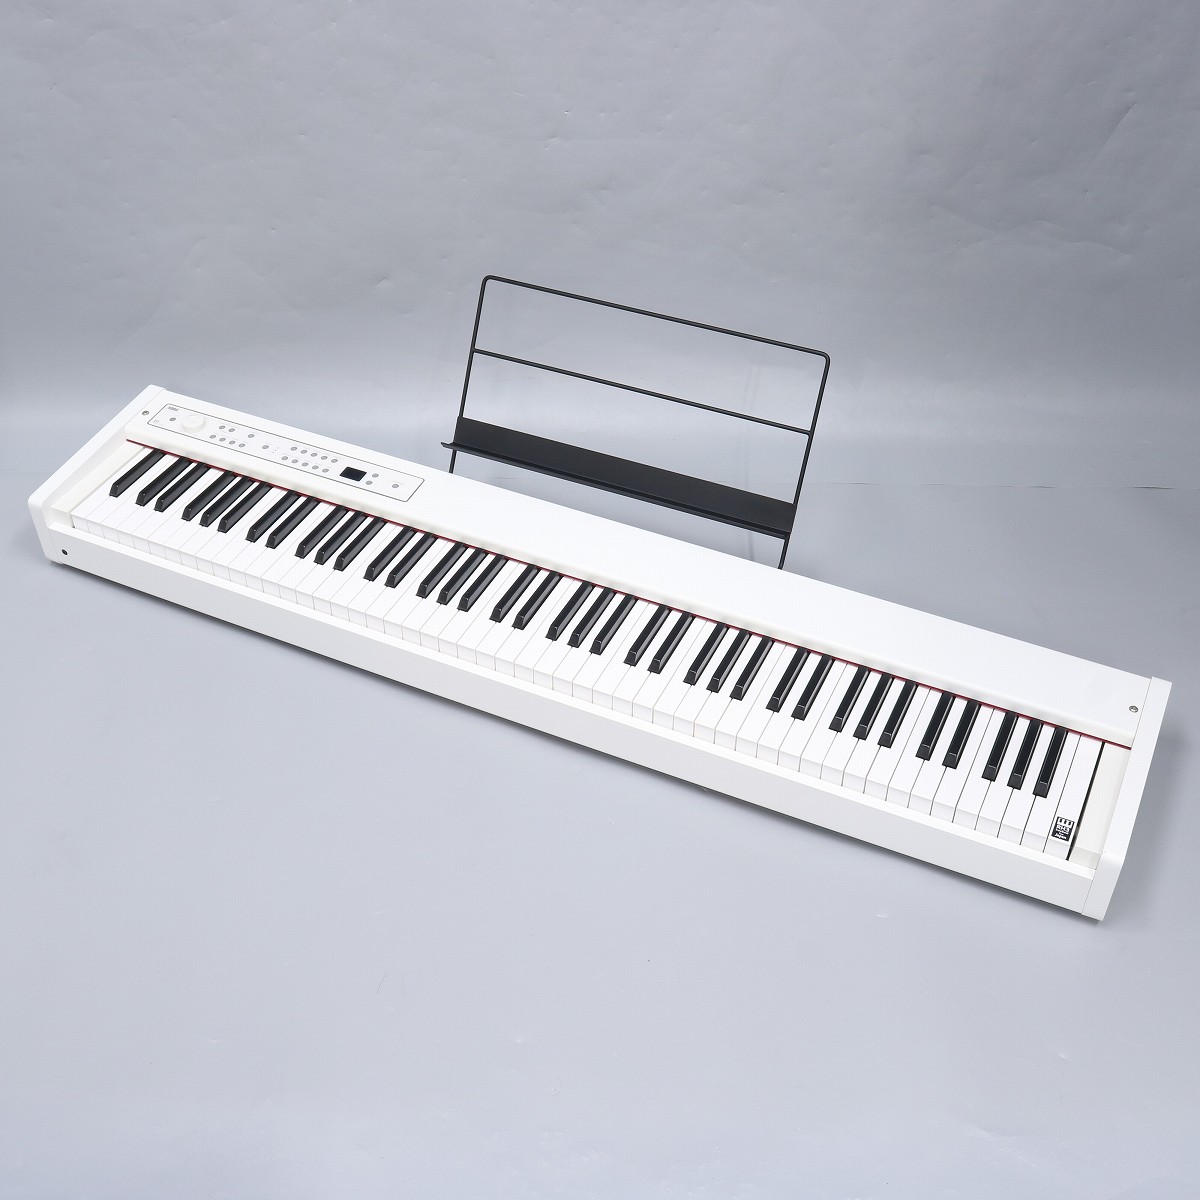 KORG コルグ / DIGITAL PIANO D1 WH デジタル・ピアノ 【2級品特価